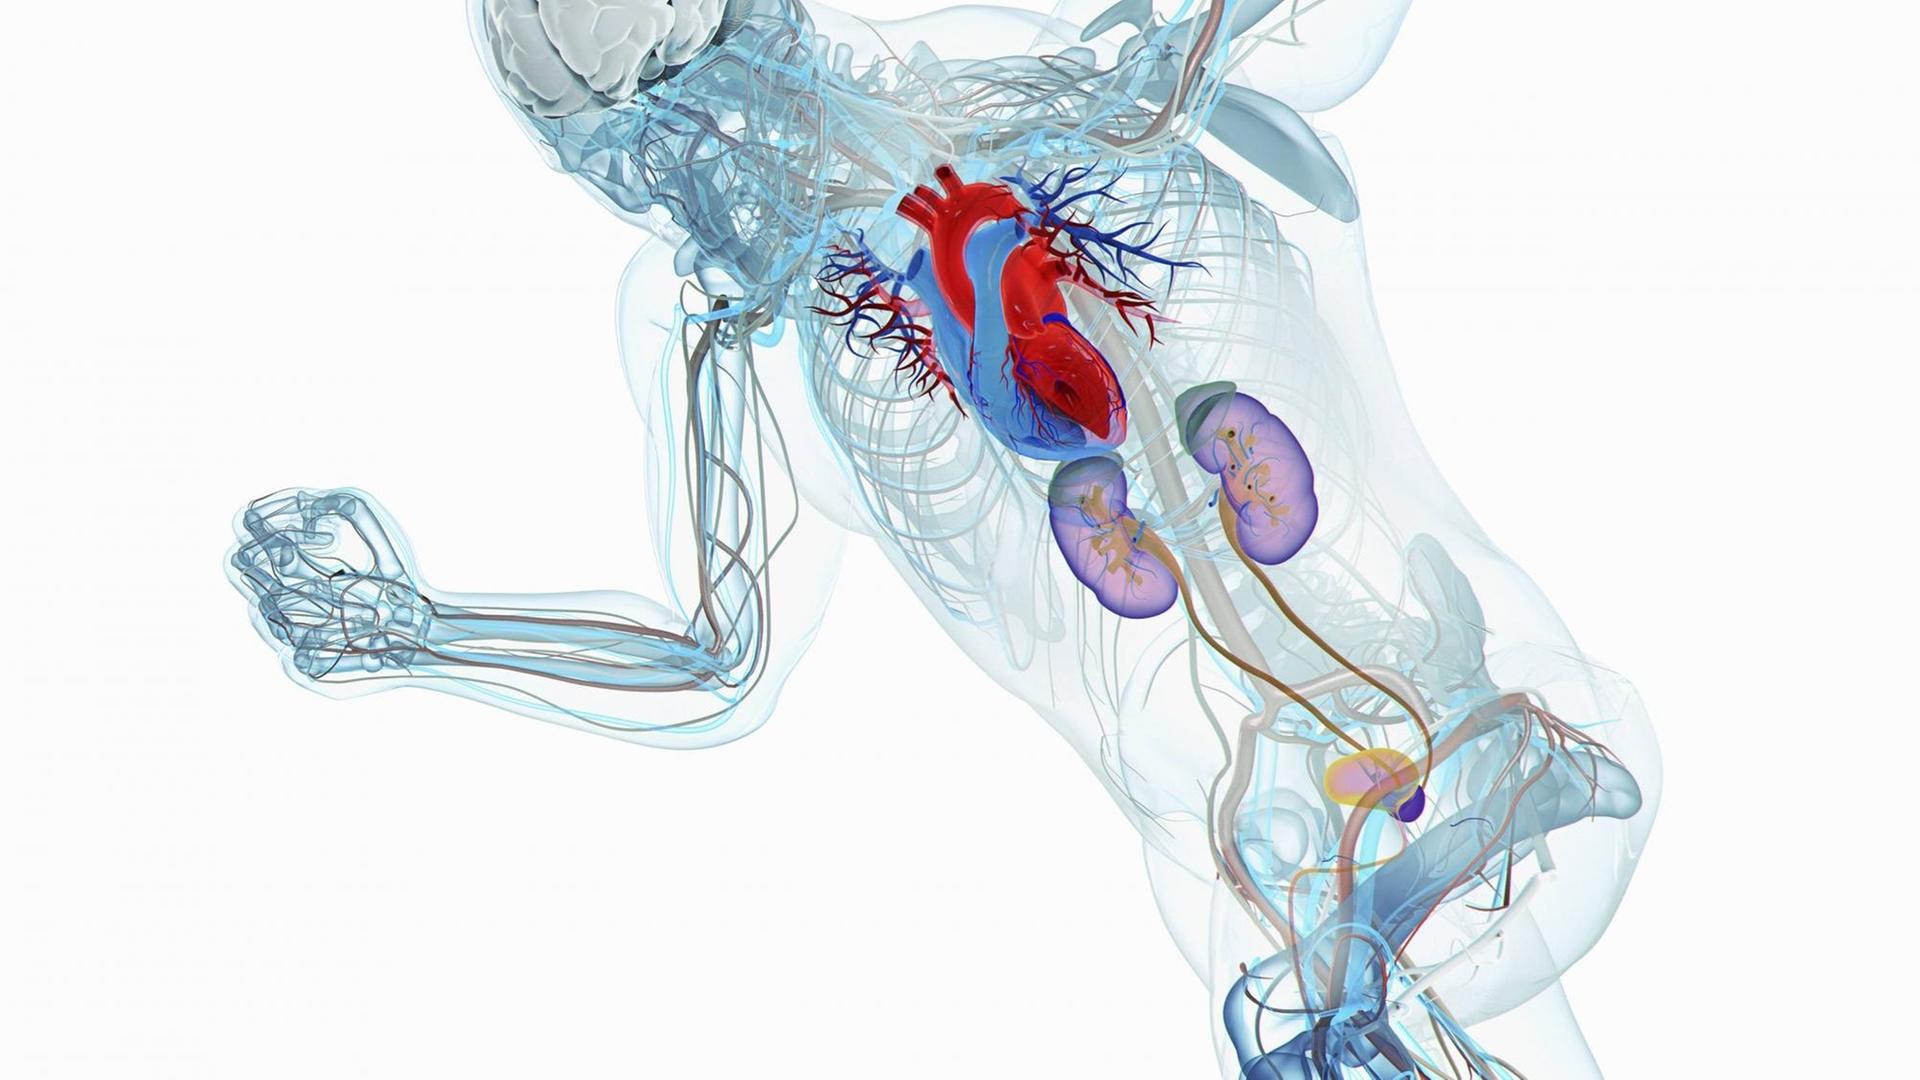 Männliches Anatomiemodell eines Läufers mit Gehirn, Herz, Niere und Blase